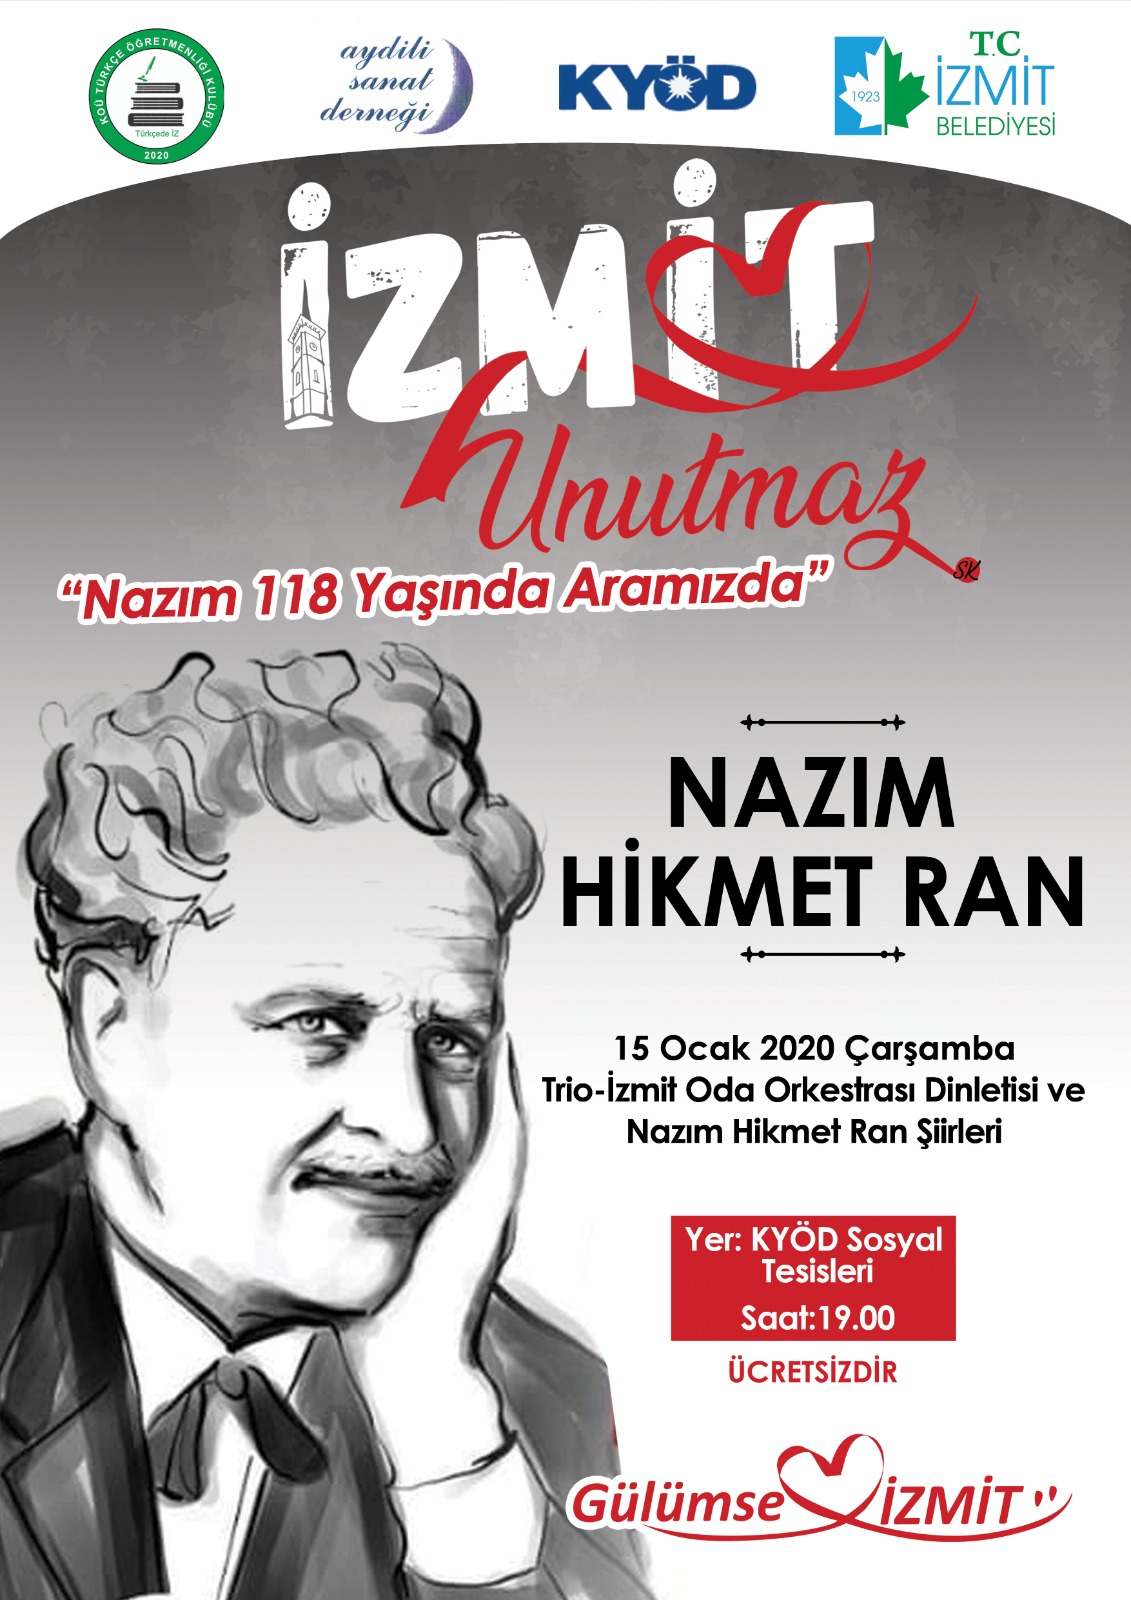 İzmit Belediyesi "İzmit Unutmaz" etkinlikleri kapsamında usta şair Nazım Hikmet Ran'ı anacak.